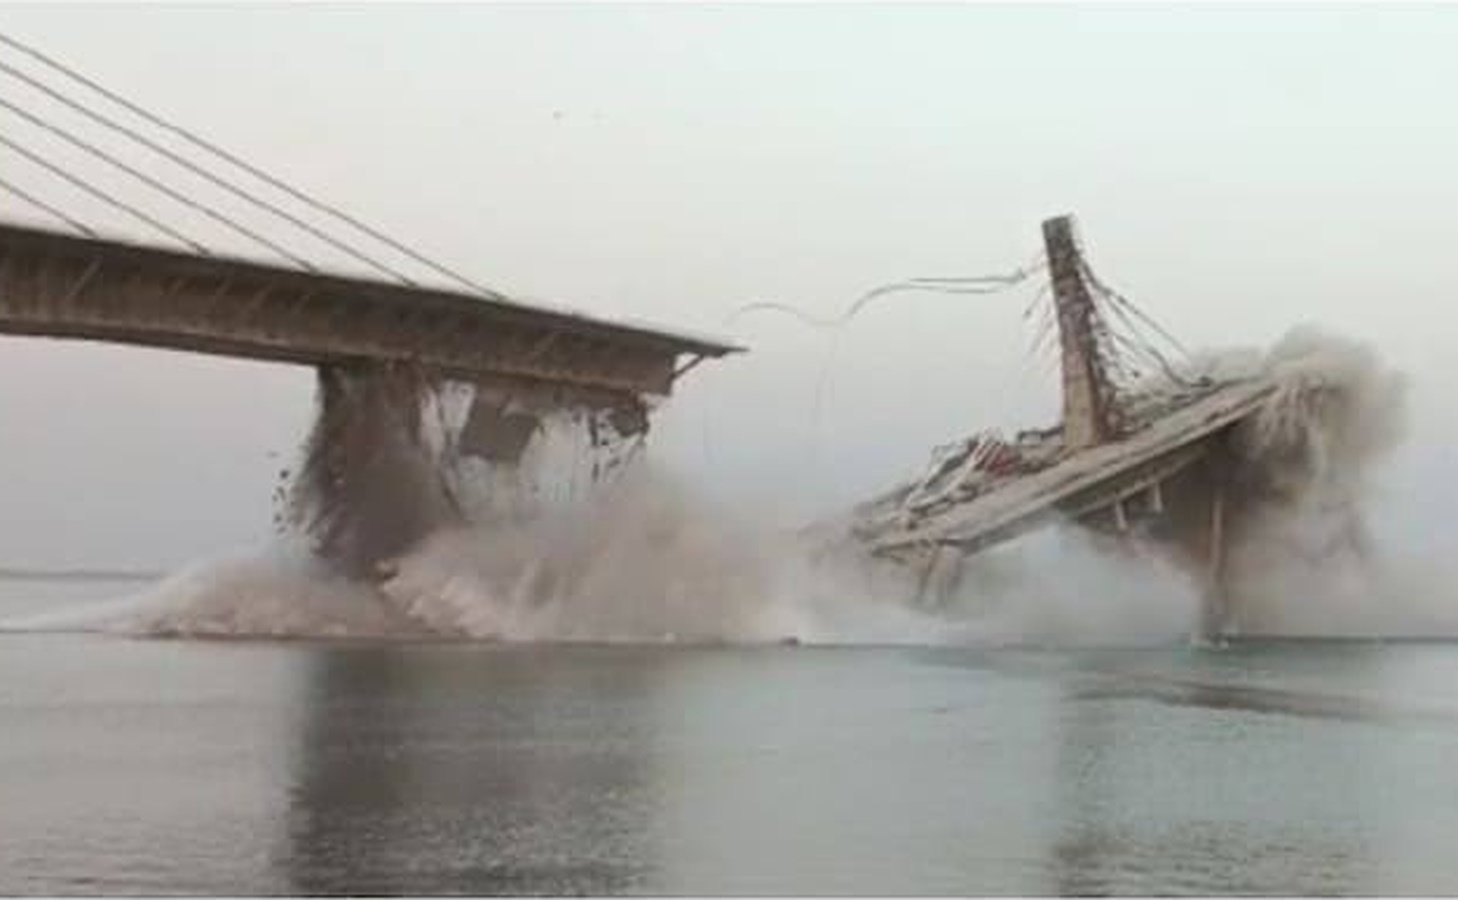 Ινδία: Κατέρρευσε υπό κατασκευή γέφυρα στον Γάγγη ποταμό